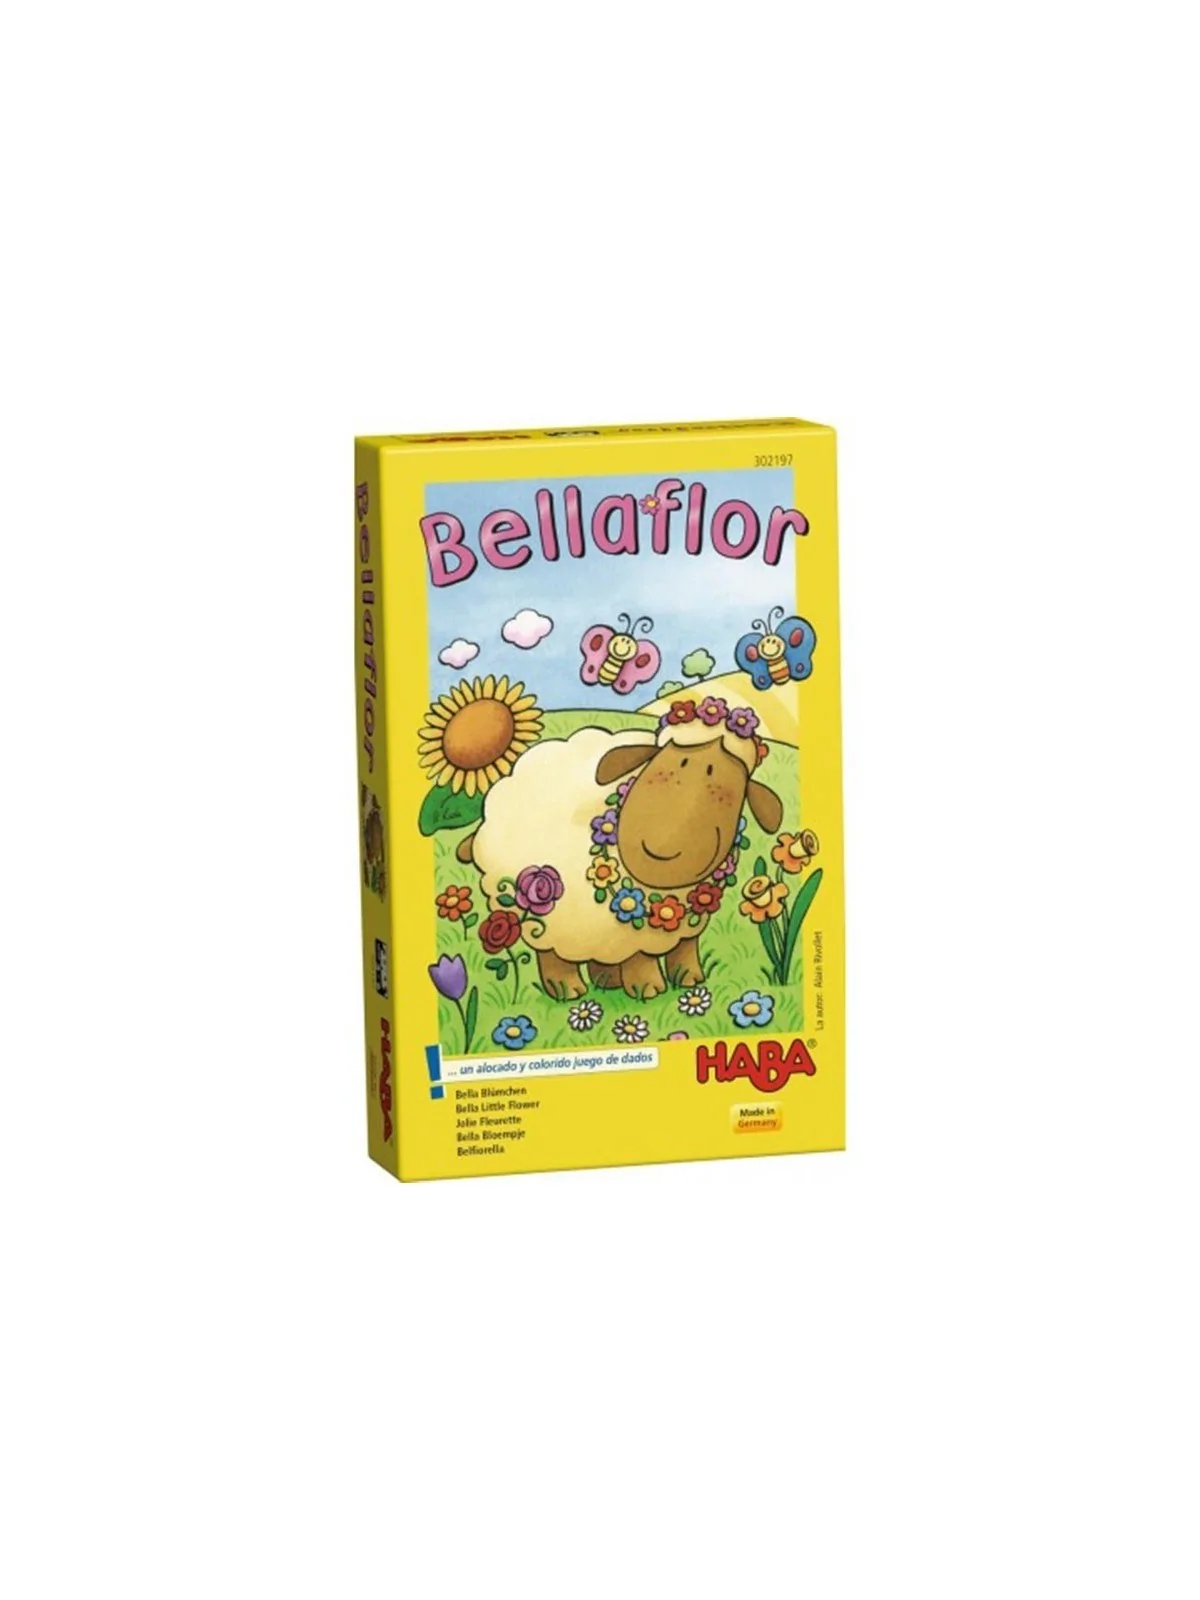 Comprar Bellaflor barato al mejor precio 9,99 € de Haba